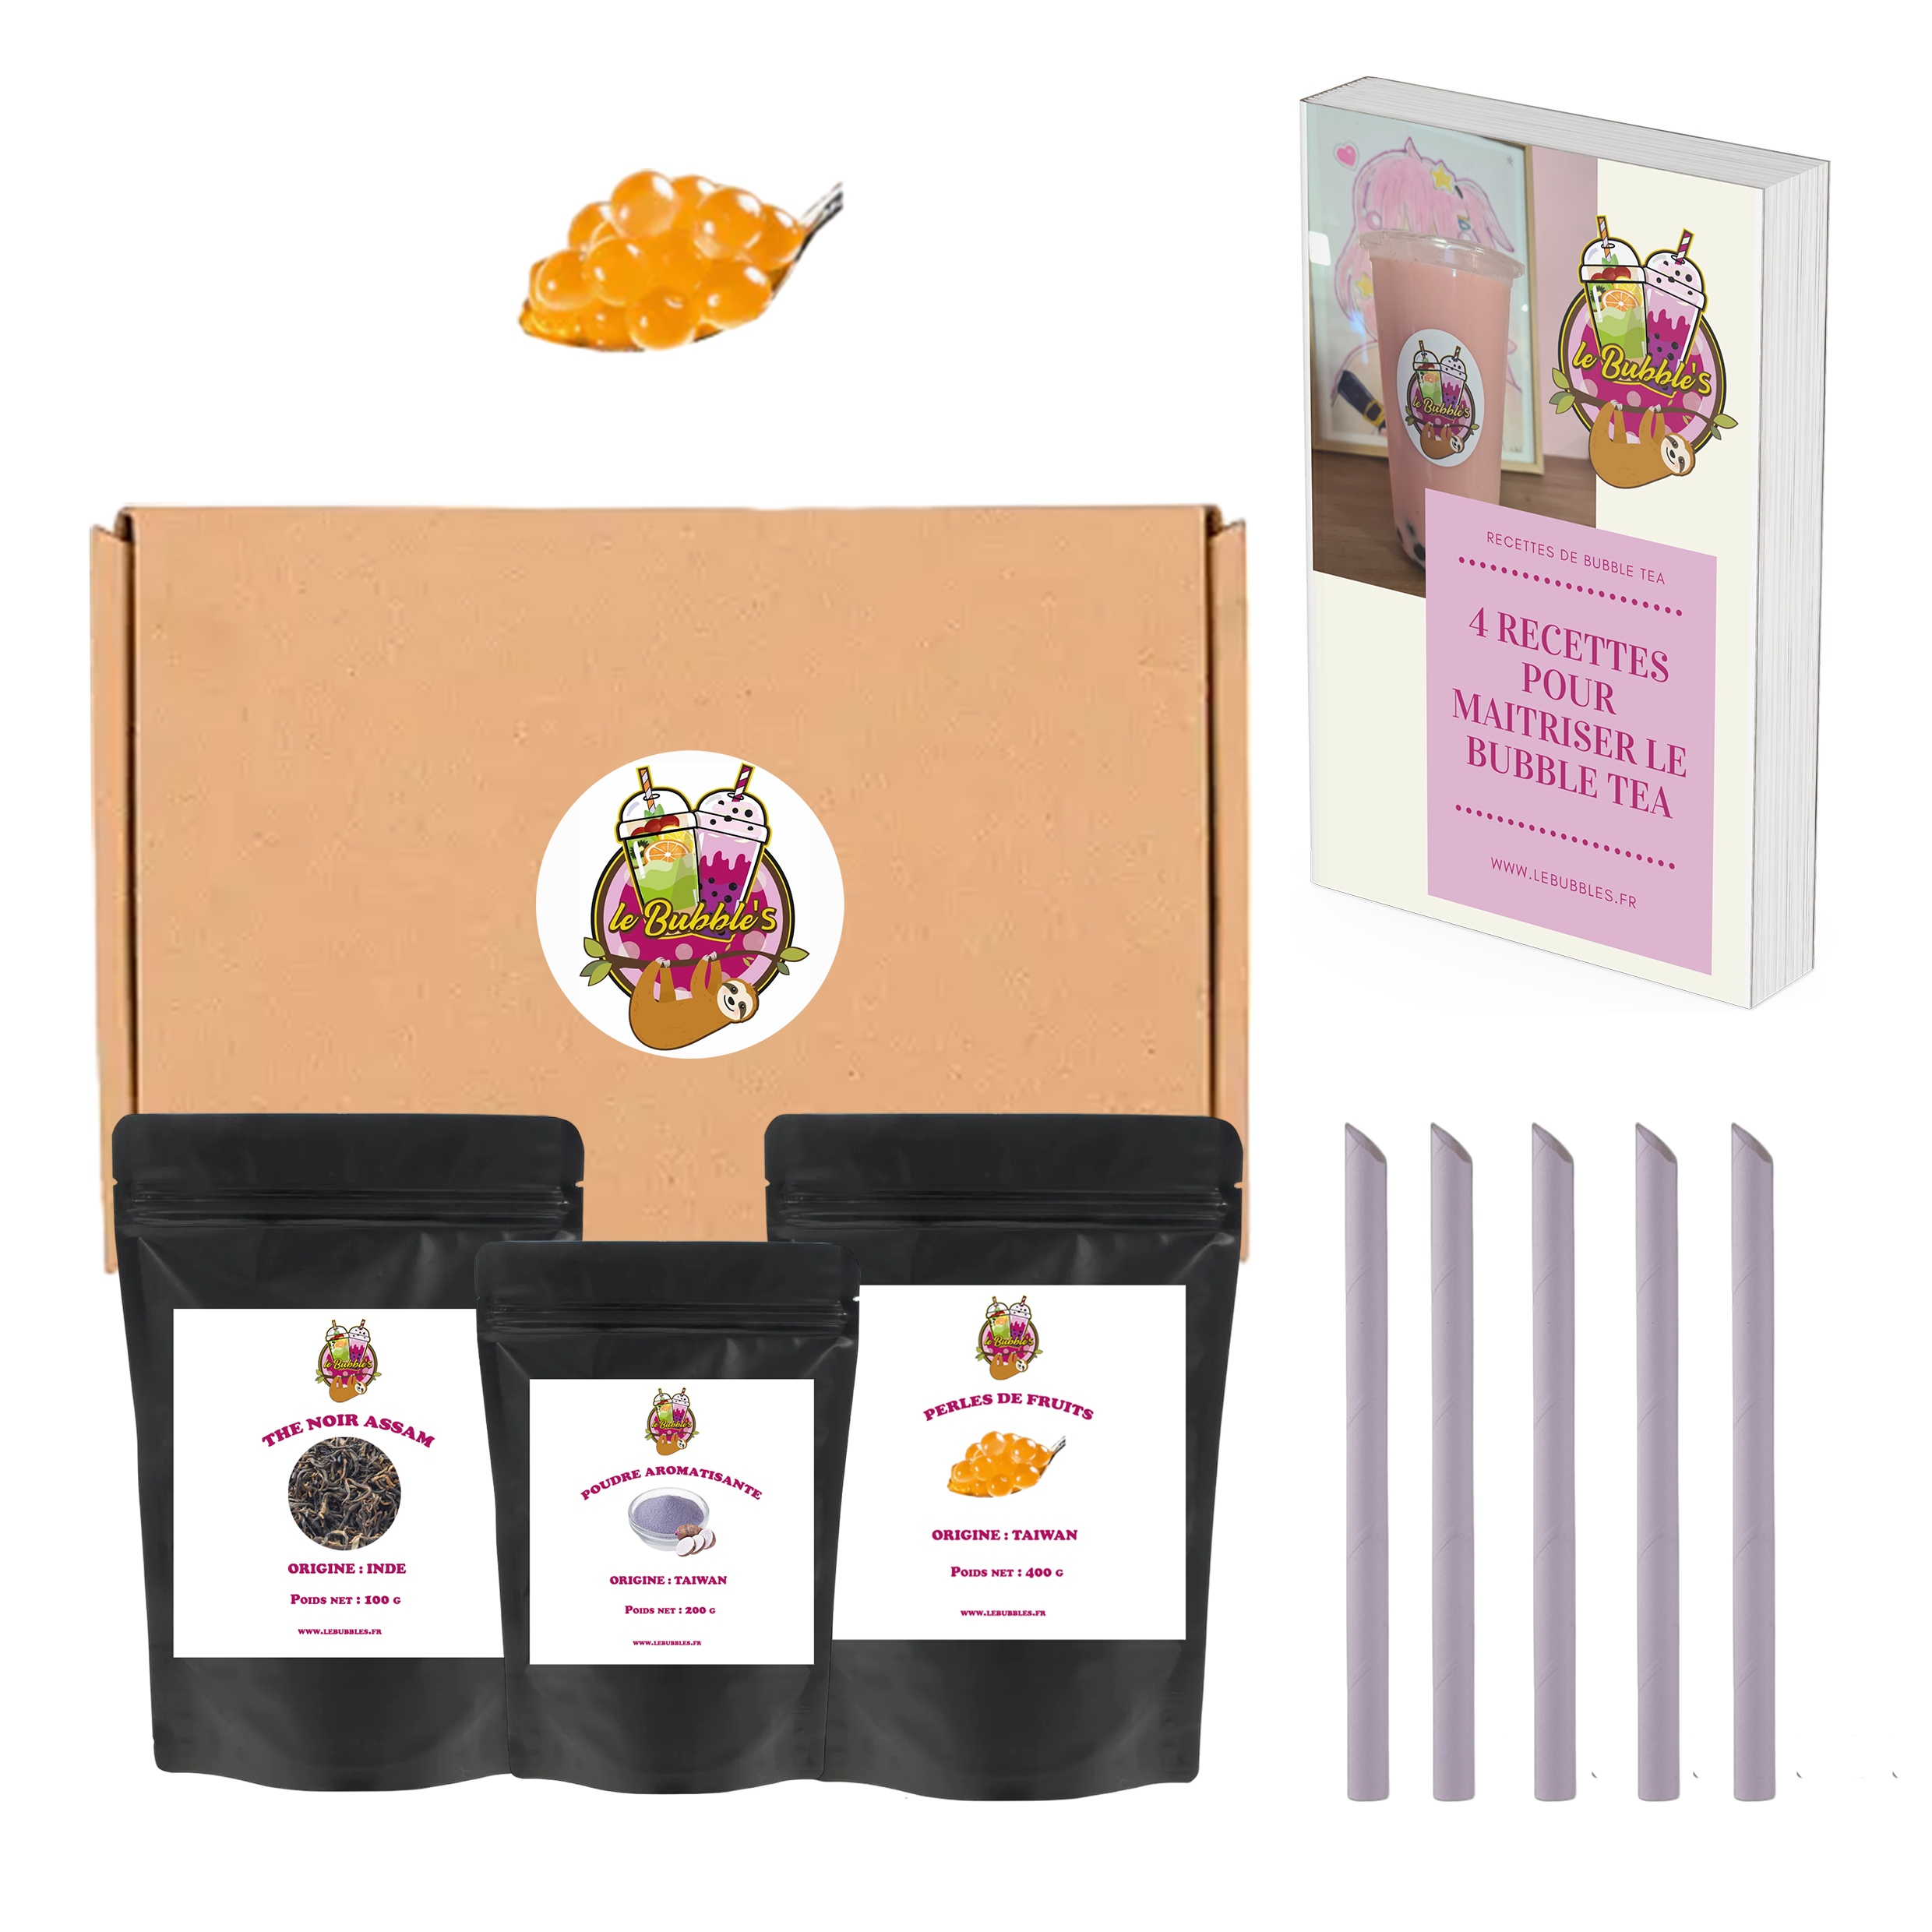 kit bubble tea poudre aromatisante et perles de fruits